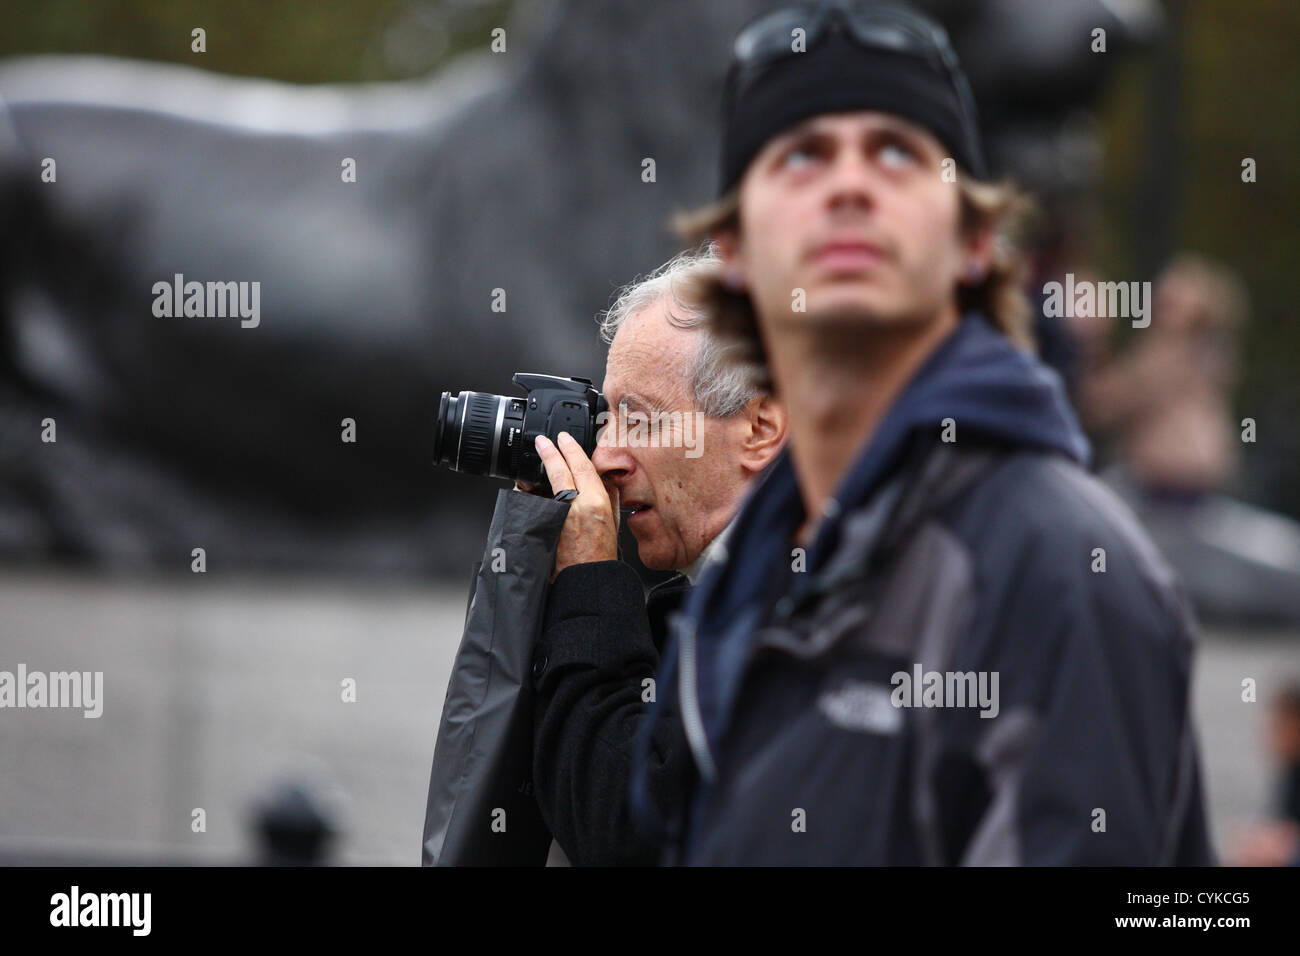 Un homme de prendre une photo à côté d'un homme qui est de la recherche. L'un des lions de Trafalgar Square à l'arrière-plan Banque D'Images